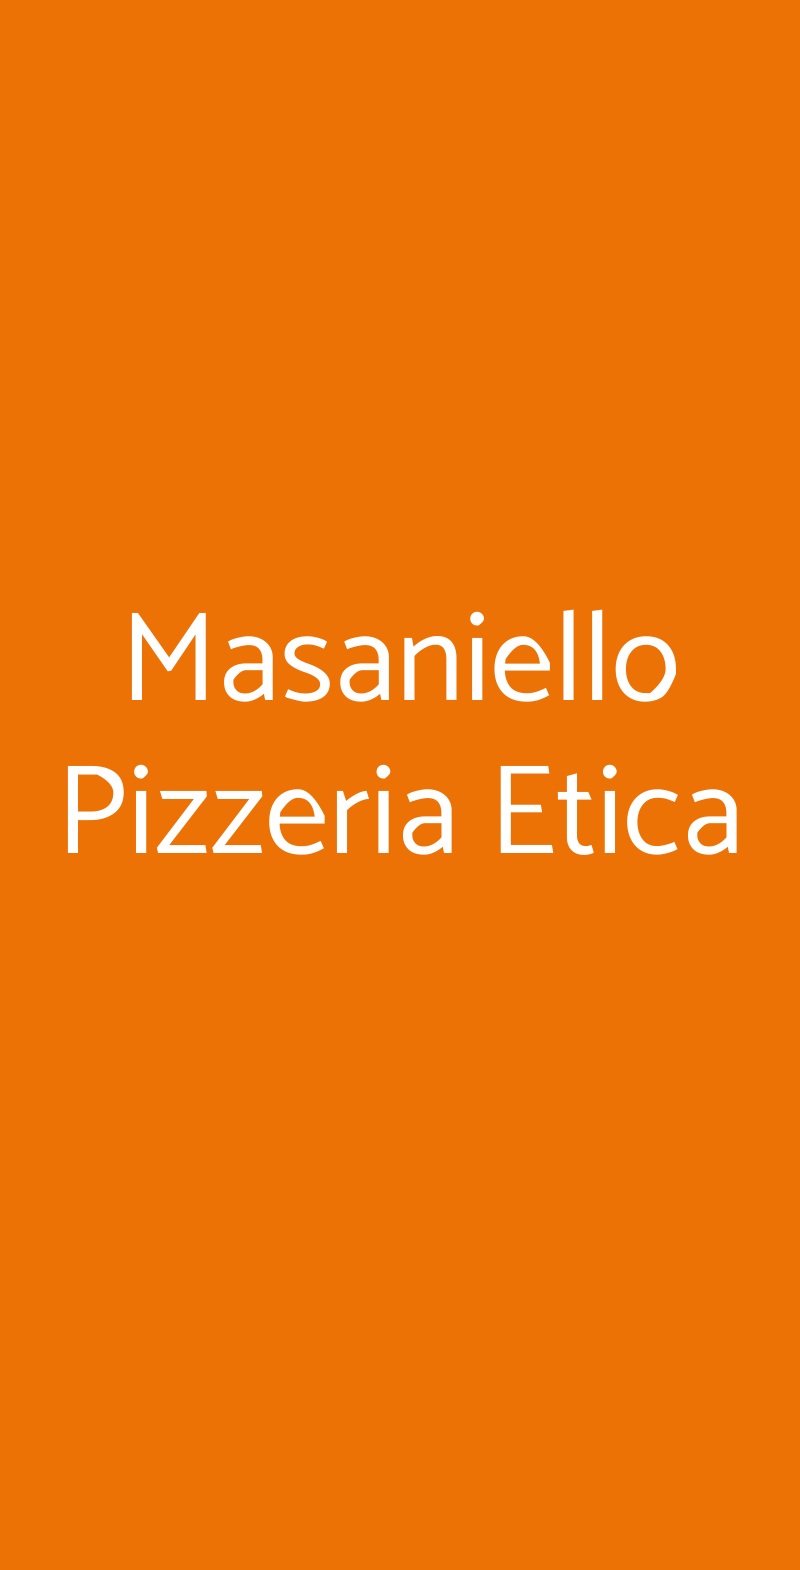 Masaniello Pizzeria Etica Bologna menù 1 pagina